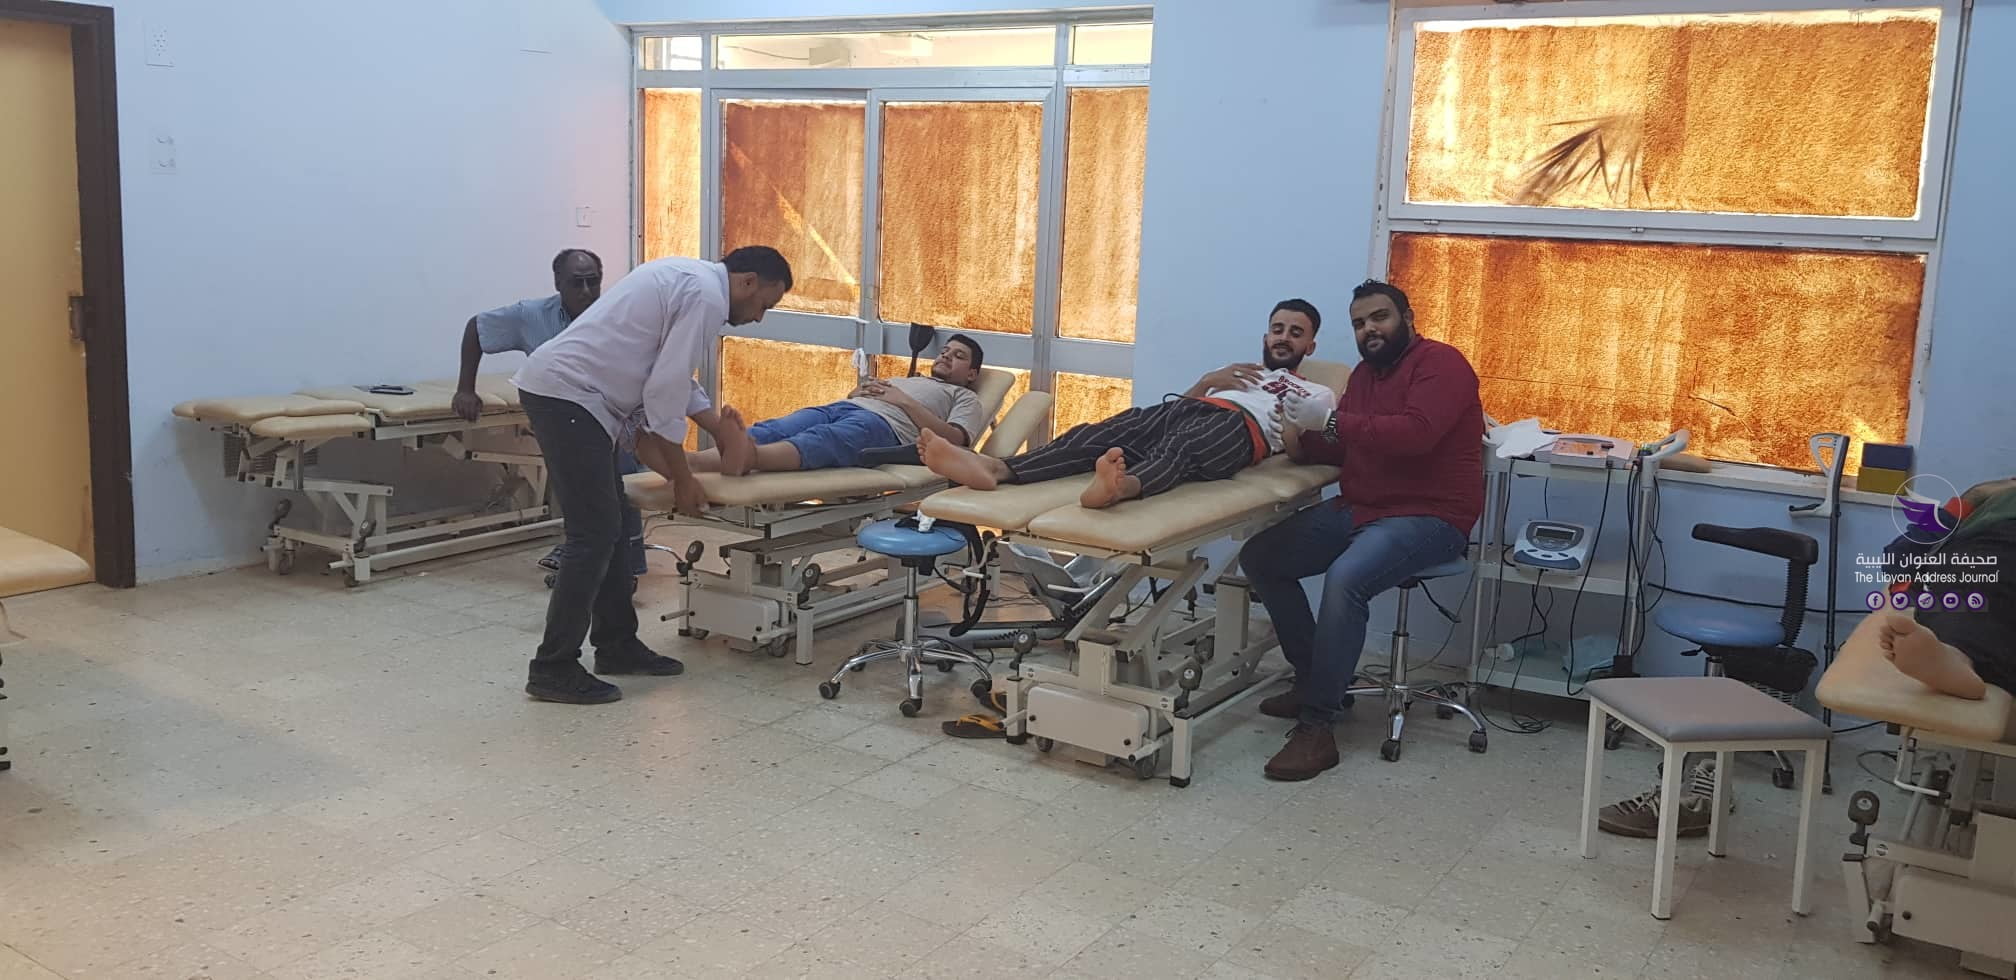 عيادة خالد بن الوليد المجمعة في بنغازي توفر خدمات طبية في عدة تخصصات - 72958693 2178410585795510 8257575097624166400 n